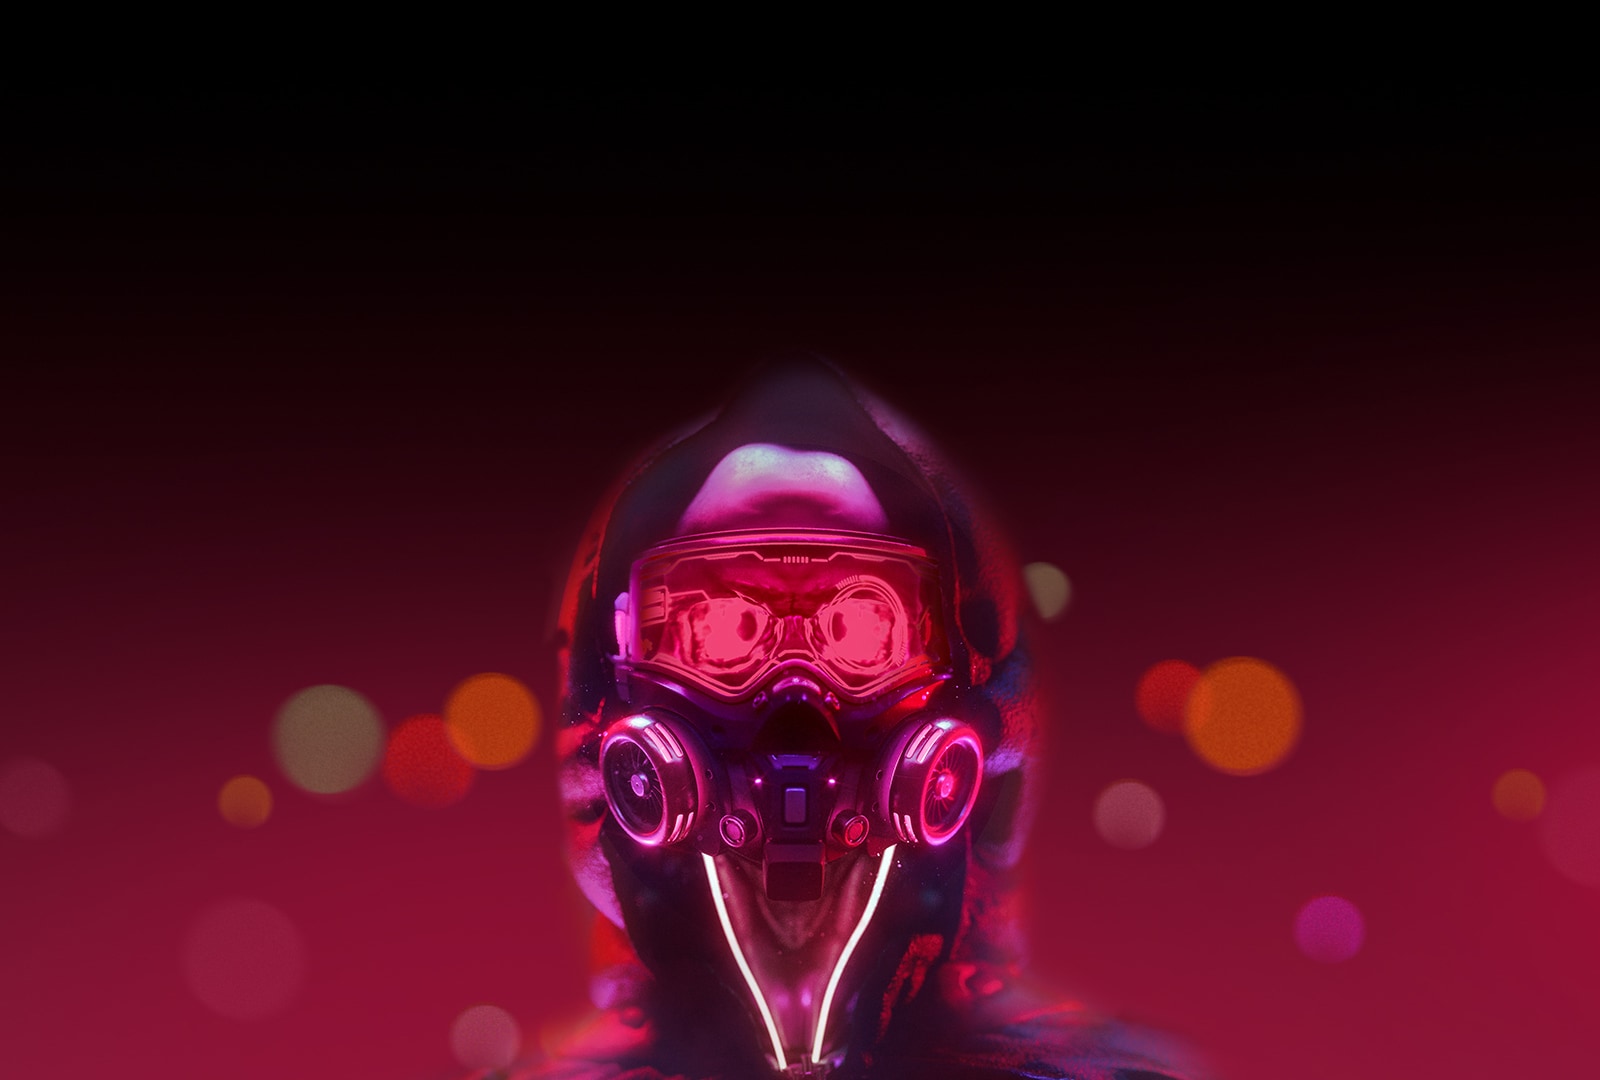 صورة لإنسان آلي في إضاءة حمراء اللون. يومض عيناء ببطء. 